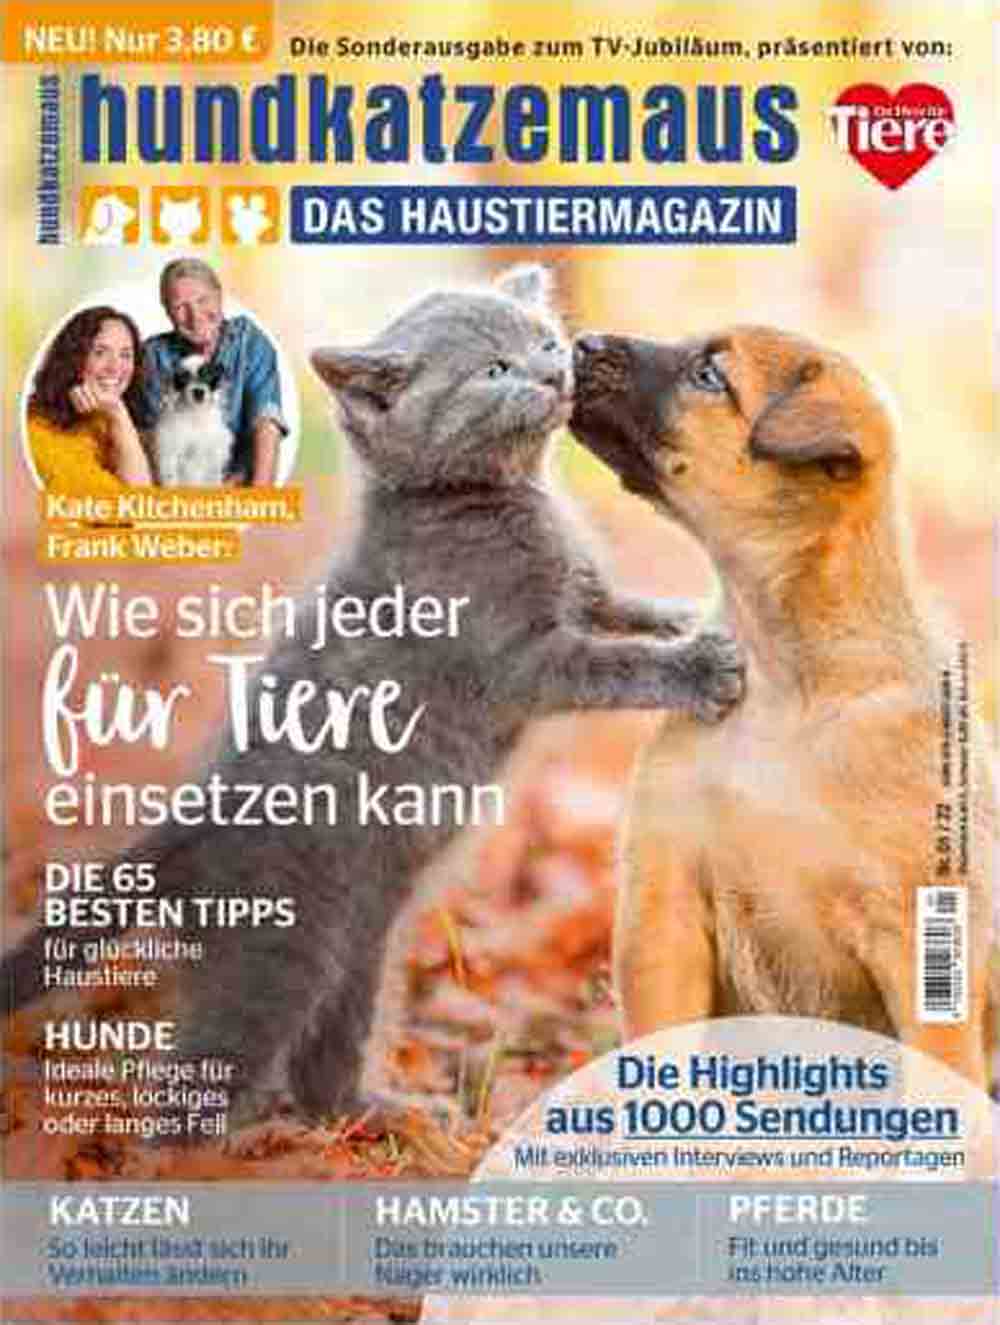 »VOX«-Haustiermagazin feiert Jubiläum im TV und mit neuer Zeitschrift: 20 Jahre »hundkatzemaus« in Gütersloh